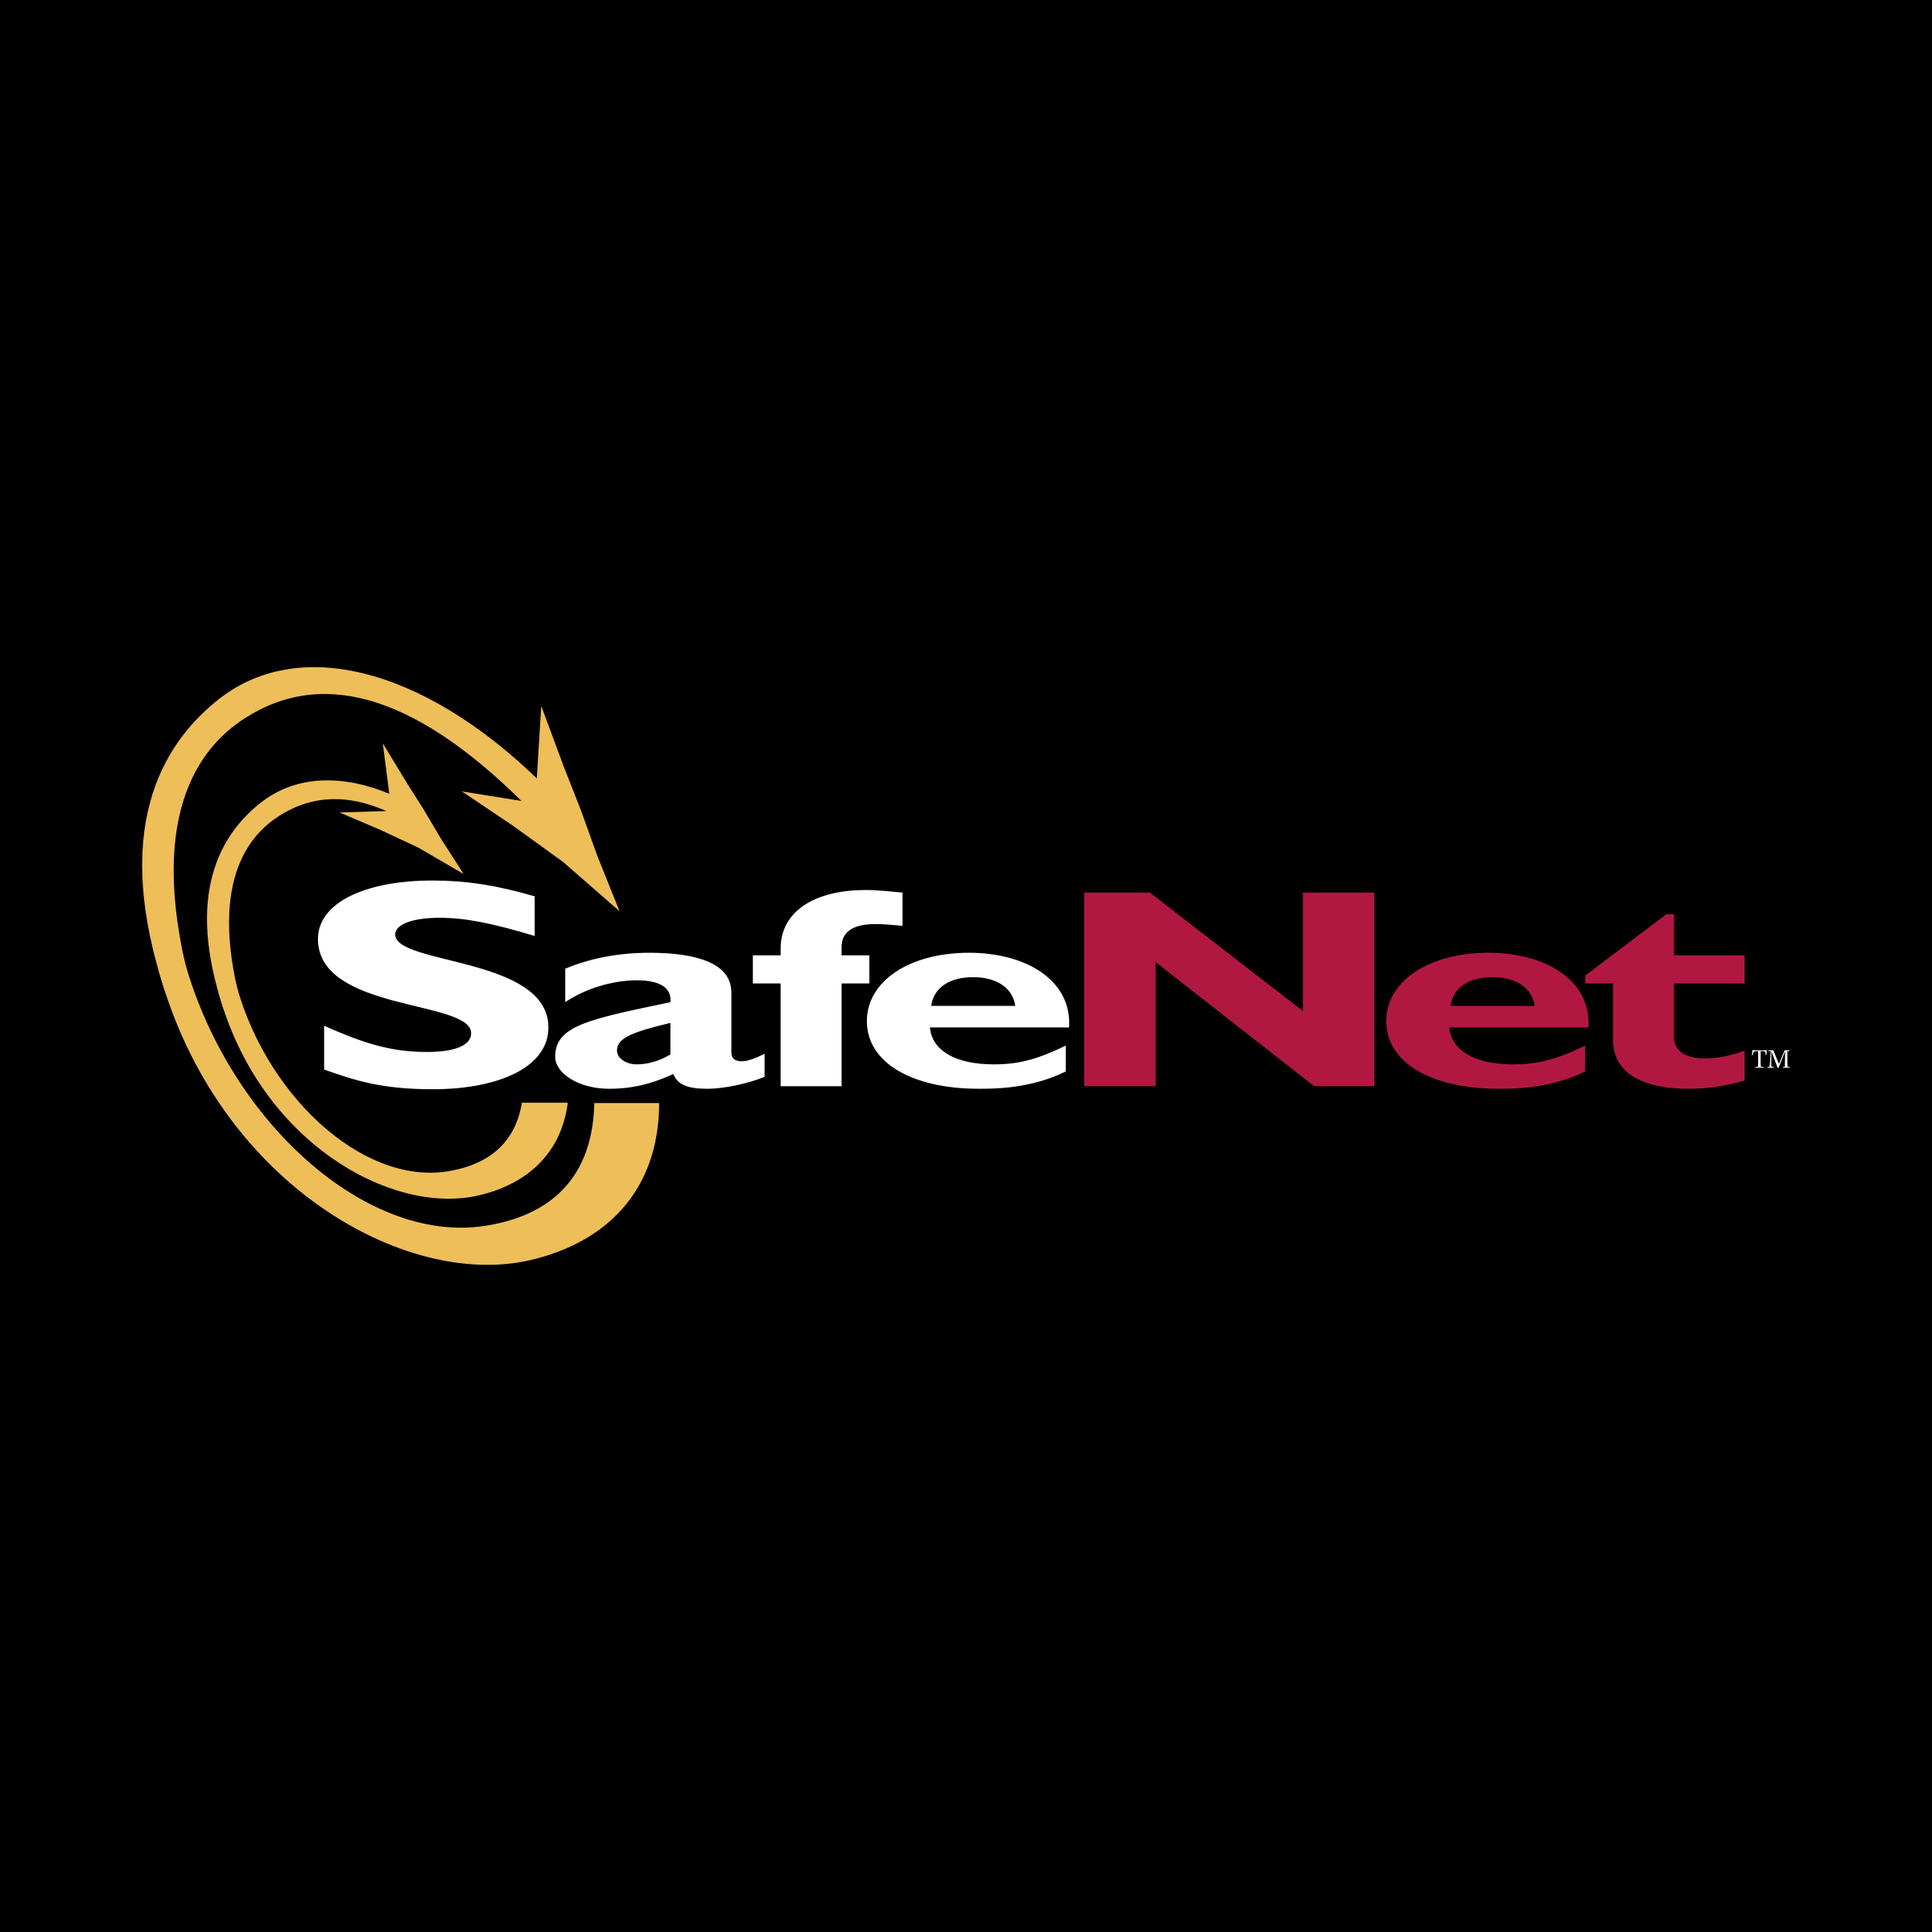 SafeNet Logo - SafeNet Logo PNG Transparent & SVG Vector - Freebie Supply